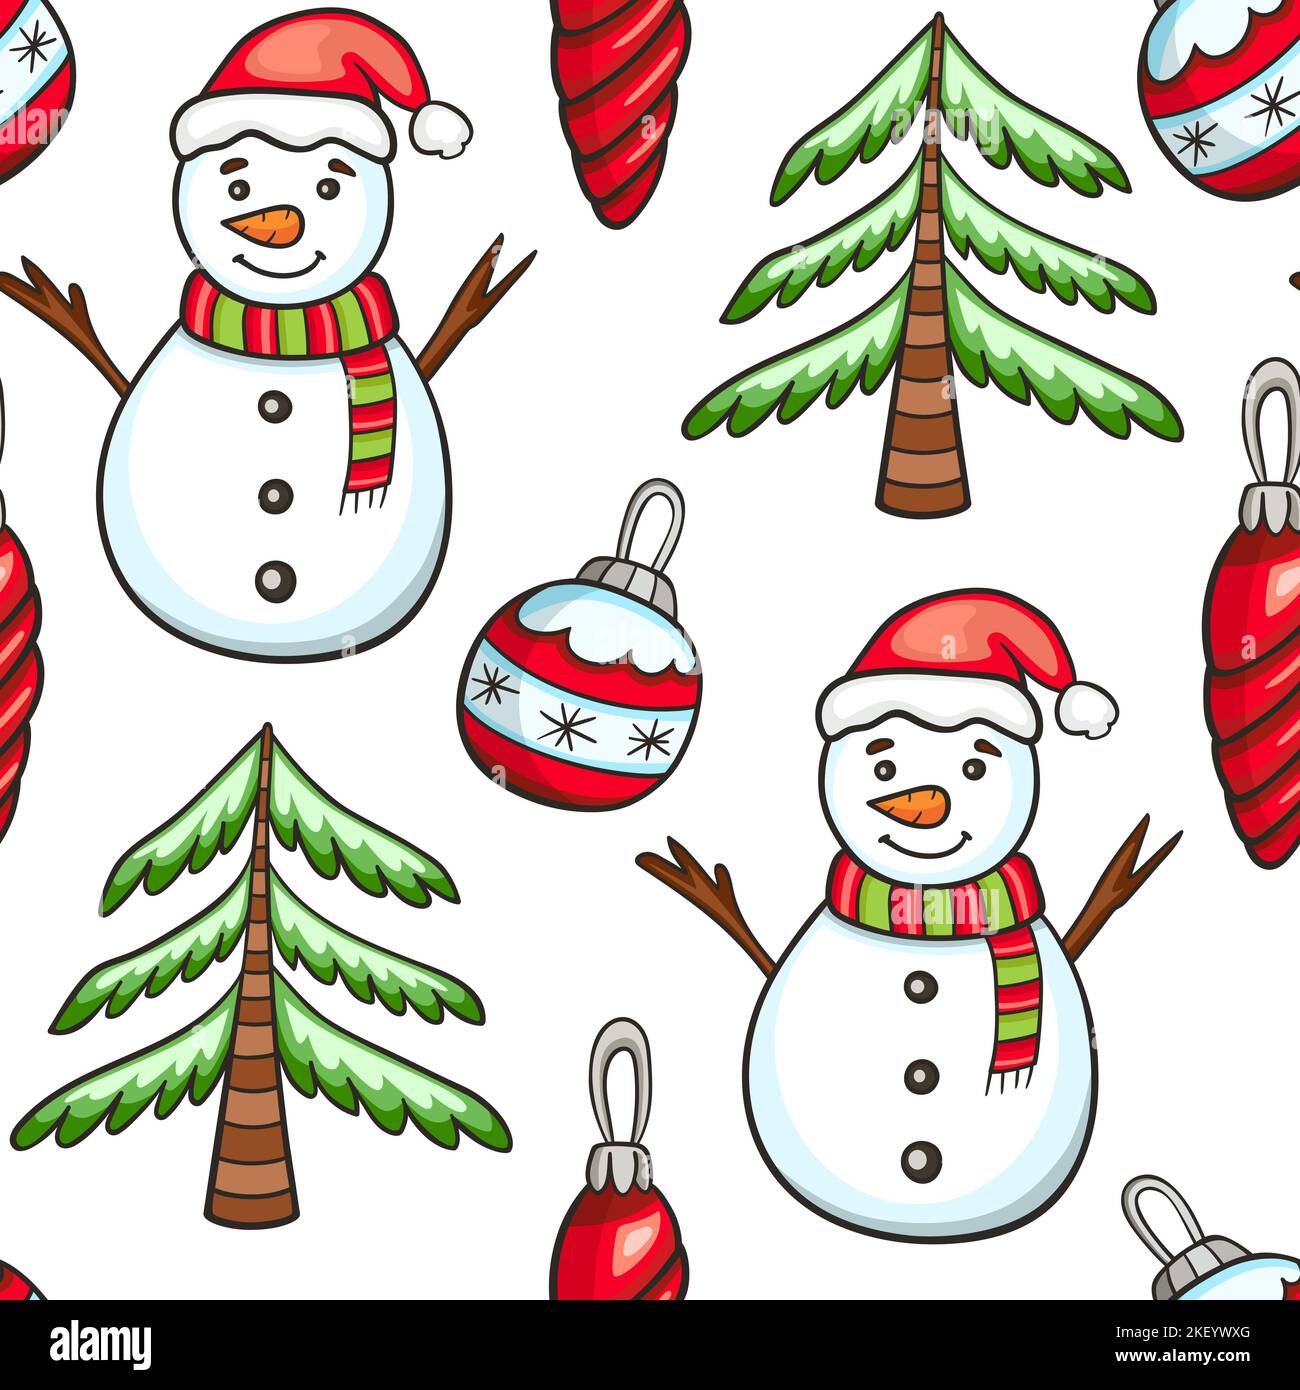 Festliches weihnachtliches nahtloses Muster mit Schneemann- und Weihnachtsschmuck auf weißem Hintergrund. Handgezeichneter Doodle-Hintergrund Stockfoto